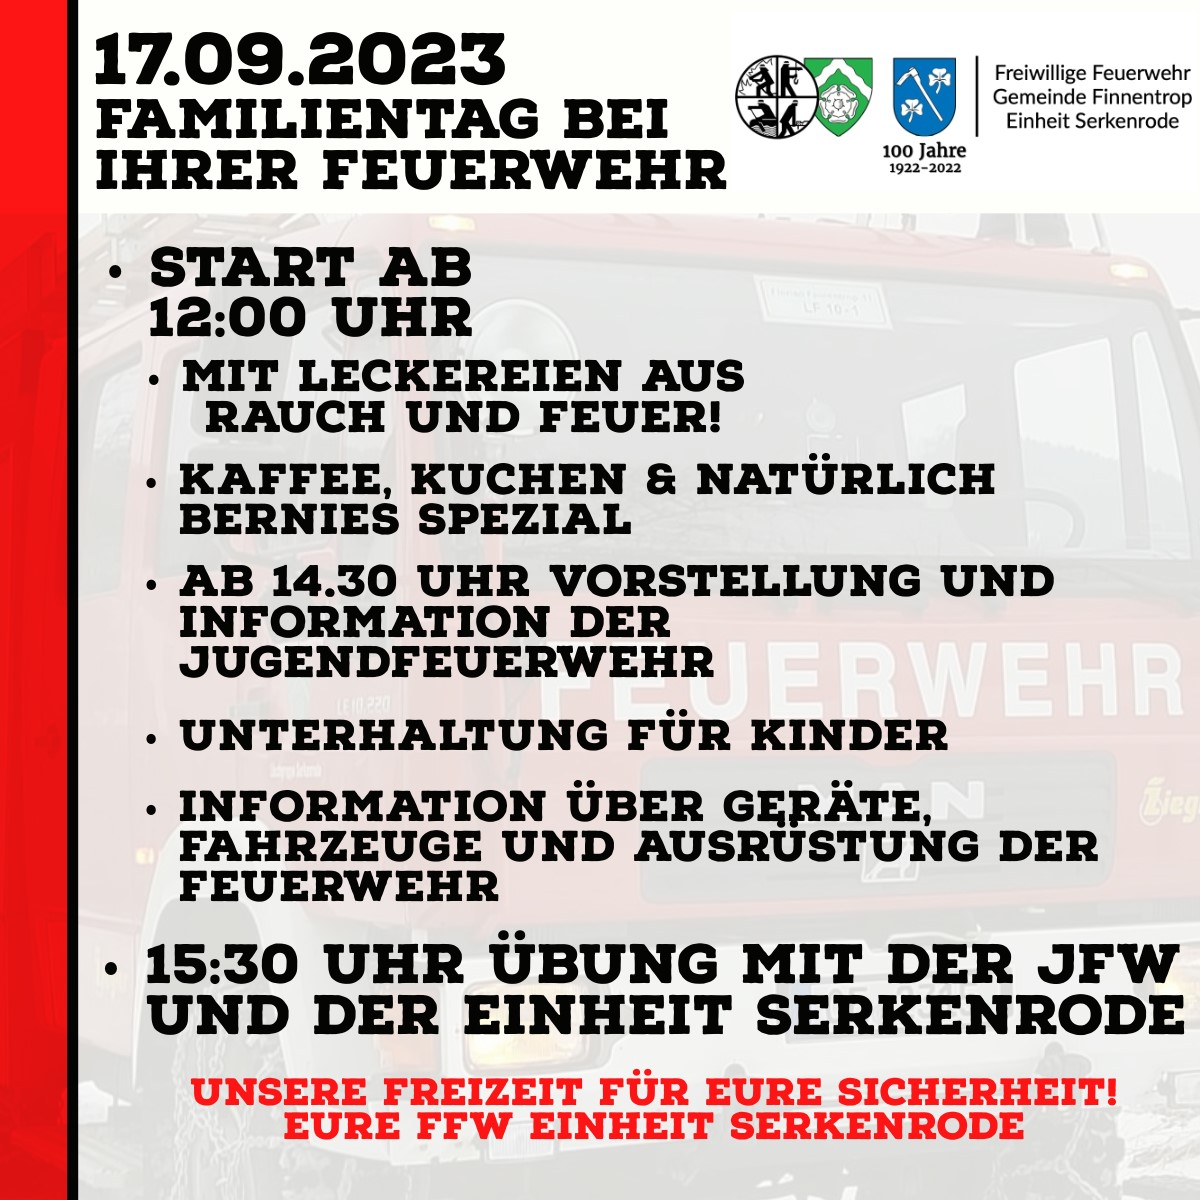 Einladung der Freiwilligen Feuerwehr Löschgruppe Serkenrode zum Feuerwehrfest. Schlauchparty am 16.09. und Familientag am 17.09.2023